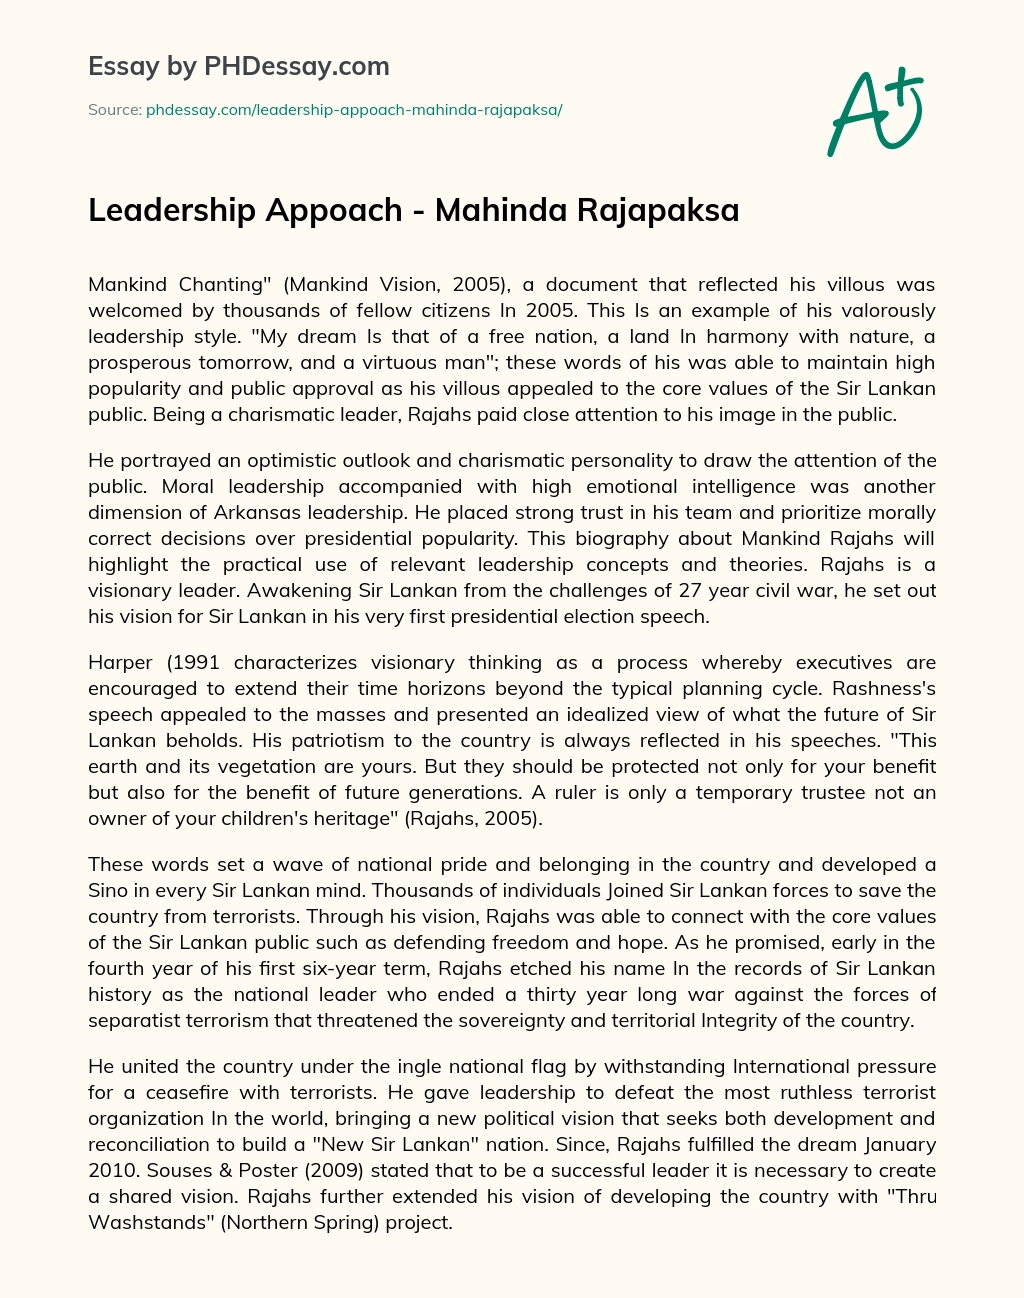 Leadership Appoach – Mahinda Rajapaksa essay